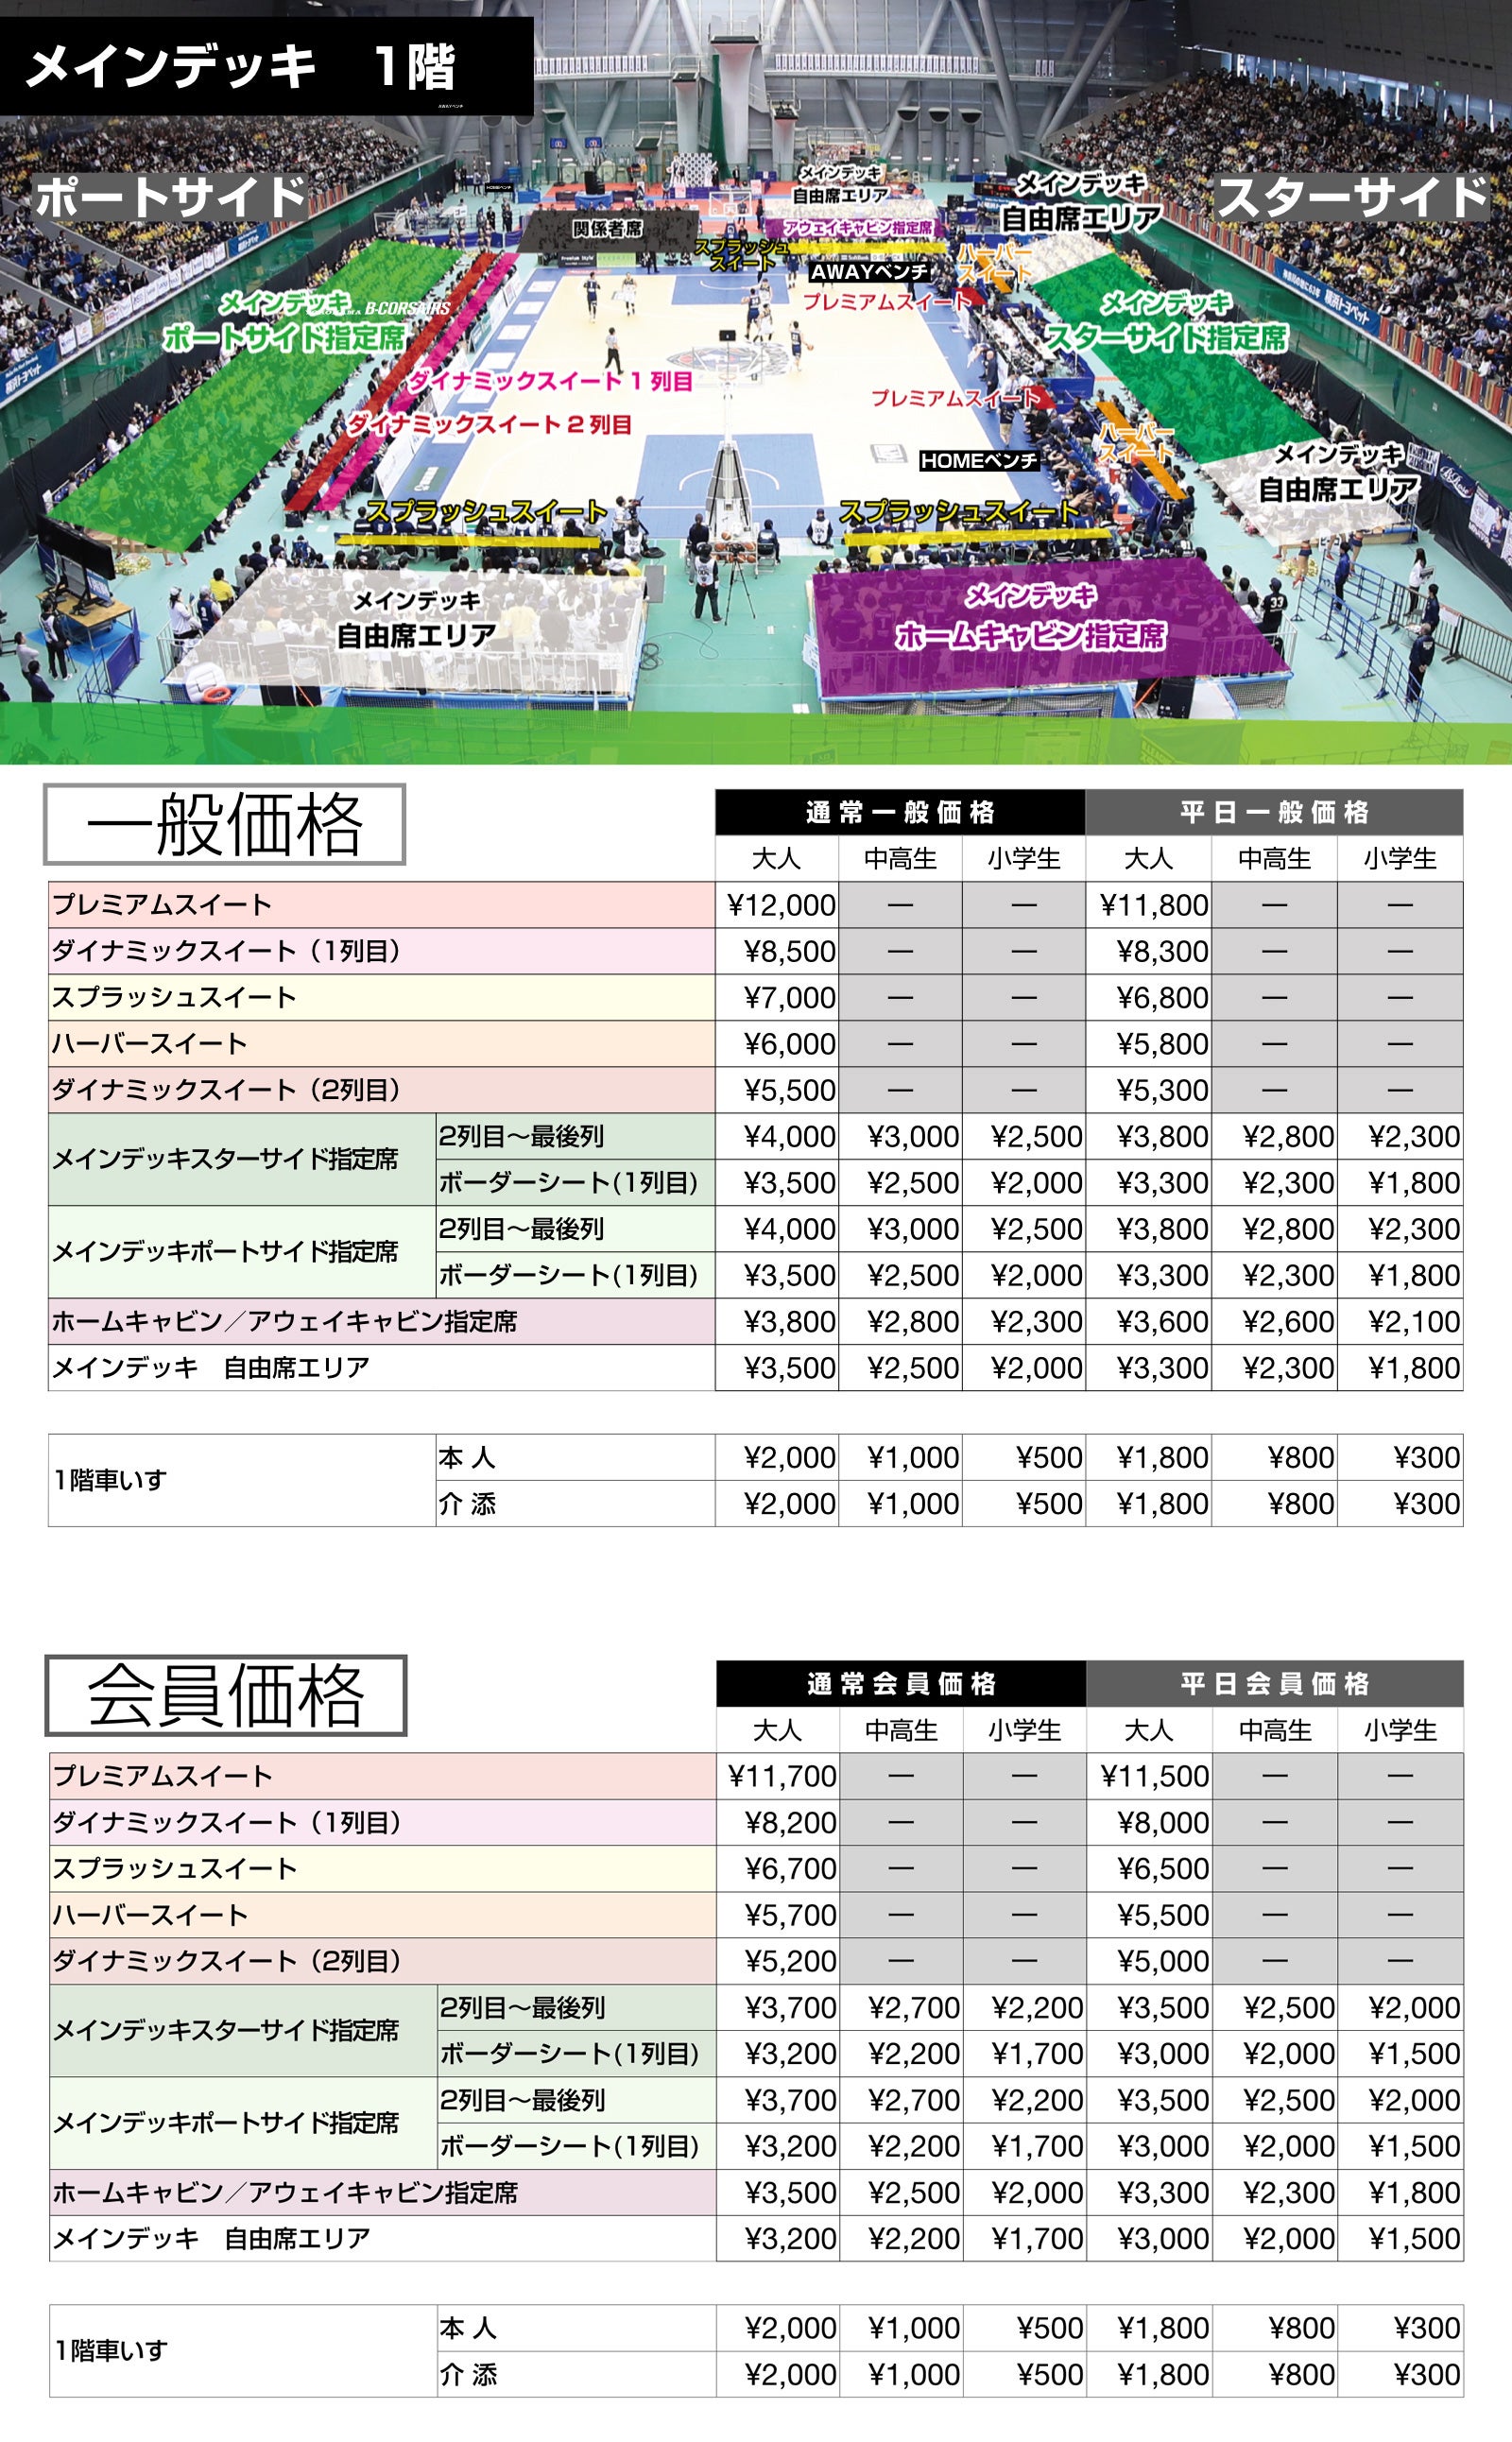 19 シーズン ホームゲーム観戦チケット概要のお知らせ 横浜ビー コルセアーズ